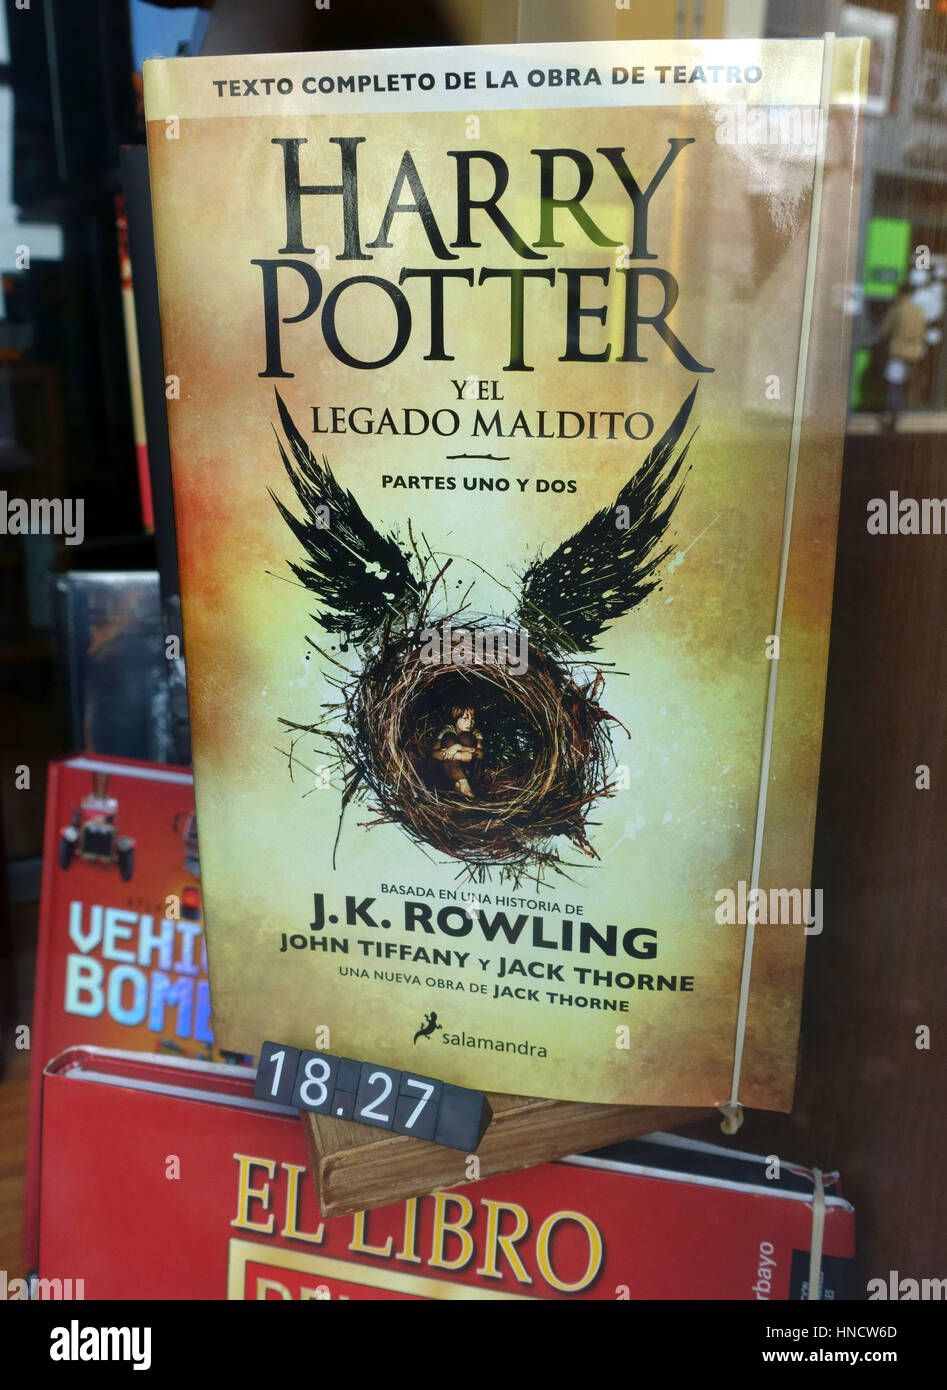 Spanische Sprachversion von "Harry Potter & das verfluchte Kind" in der Buchhandlung in Teneriffa, Spanien Stockfoto